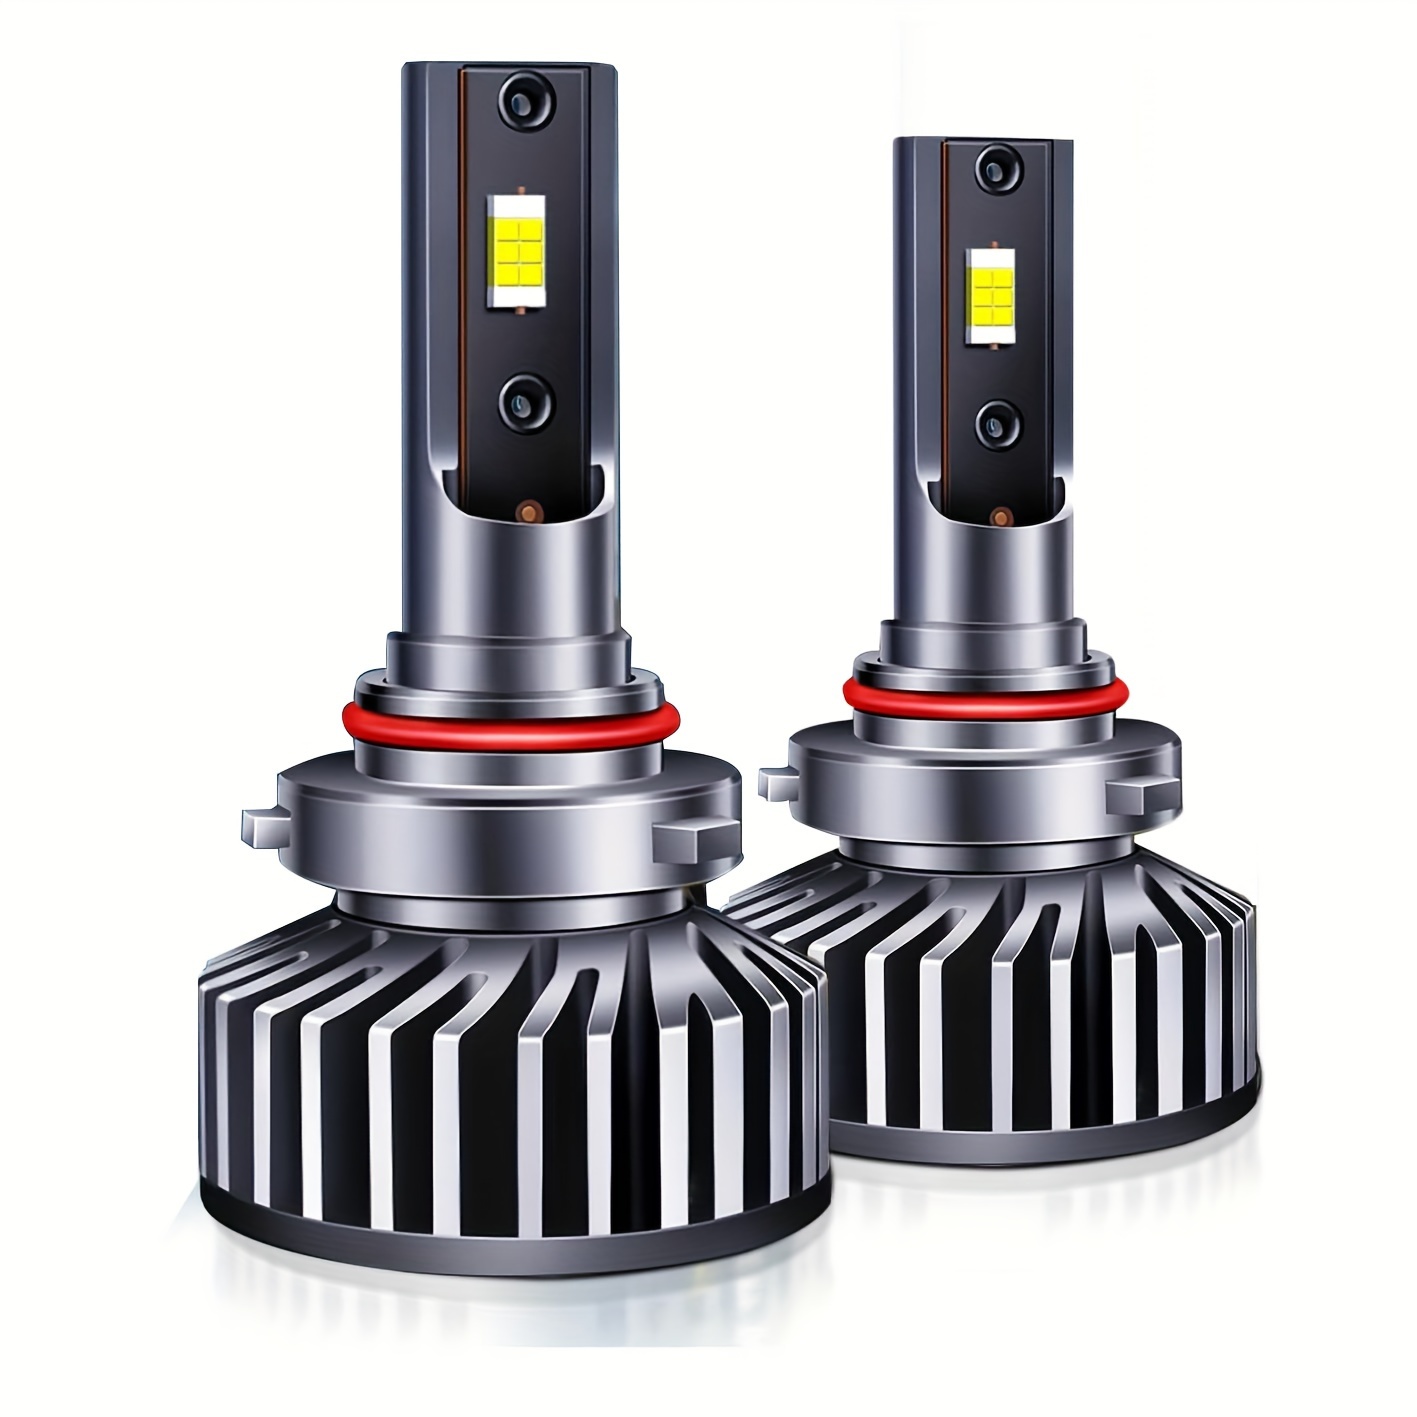  Bombilla LED H1 para faros delanteros, 2023 mejorada 1:1,  tamaño mini H1, bombillas antiniebla, luz antiniebla, Plug and Play, súper  brillante, 6000 K, color blanco, sin ventilador, kit de conversión de